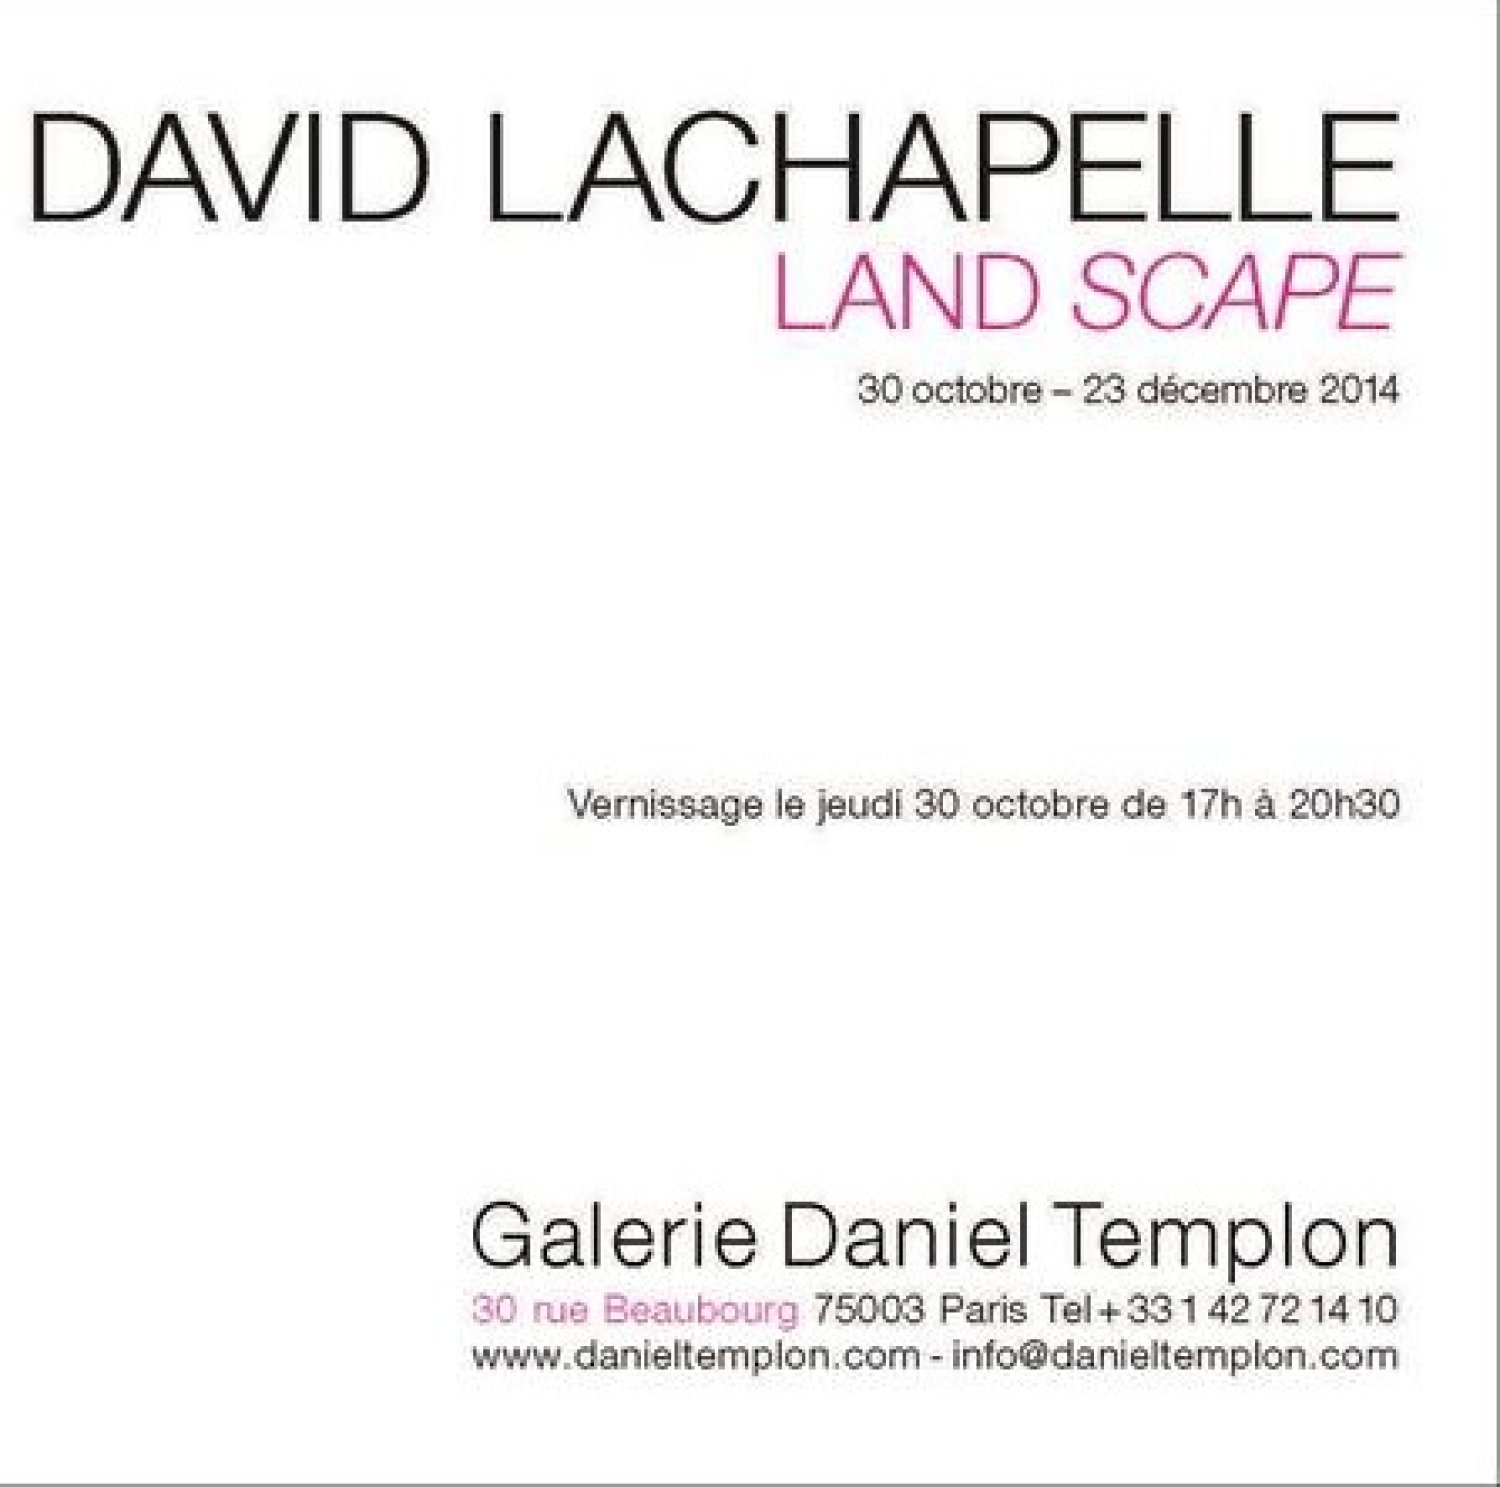 David Lachapelle à Galerie Daniel Templon